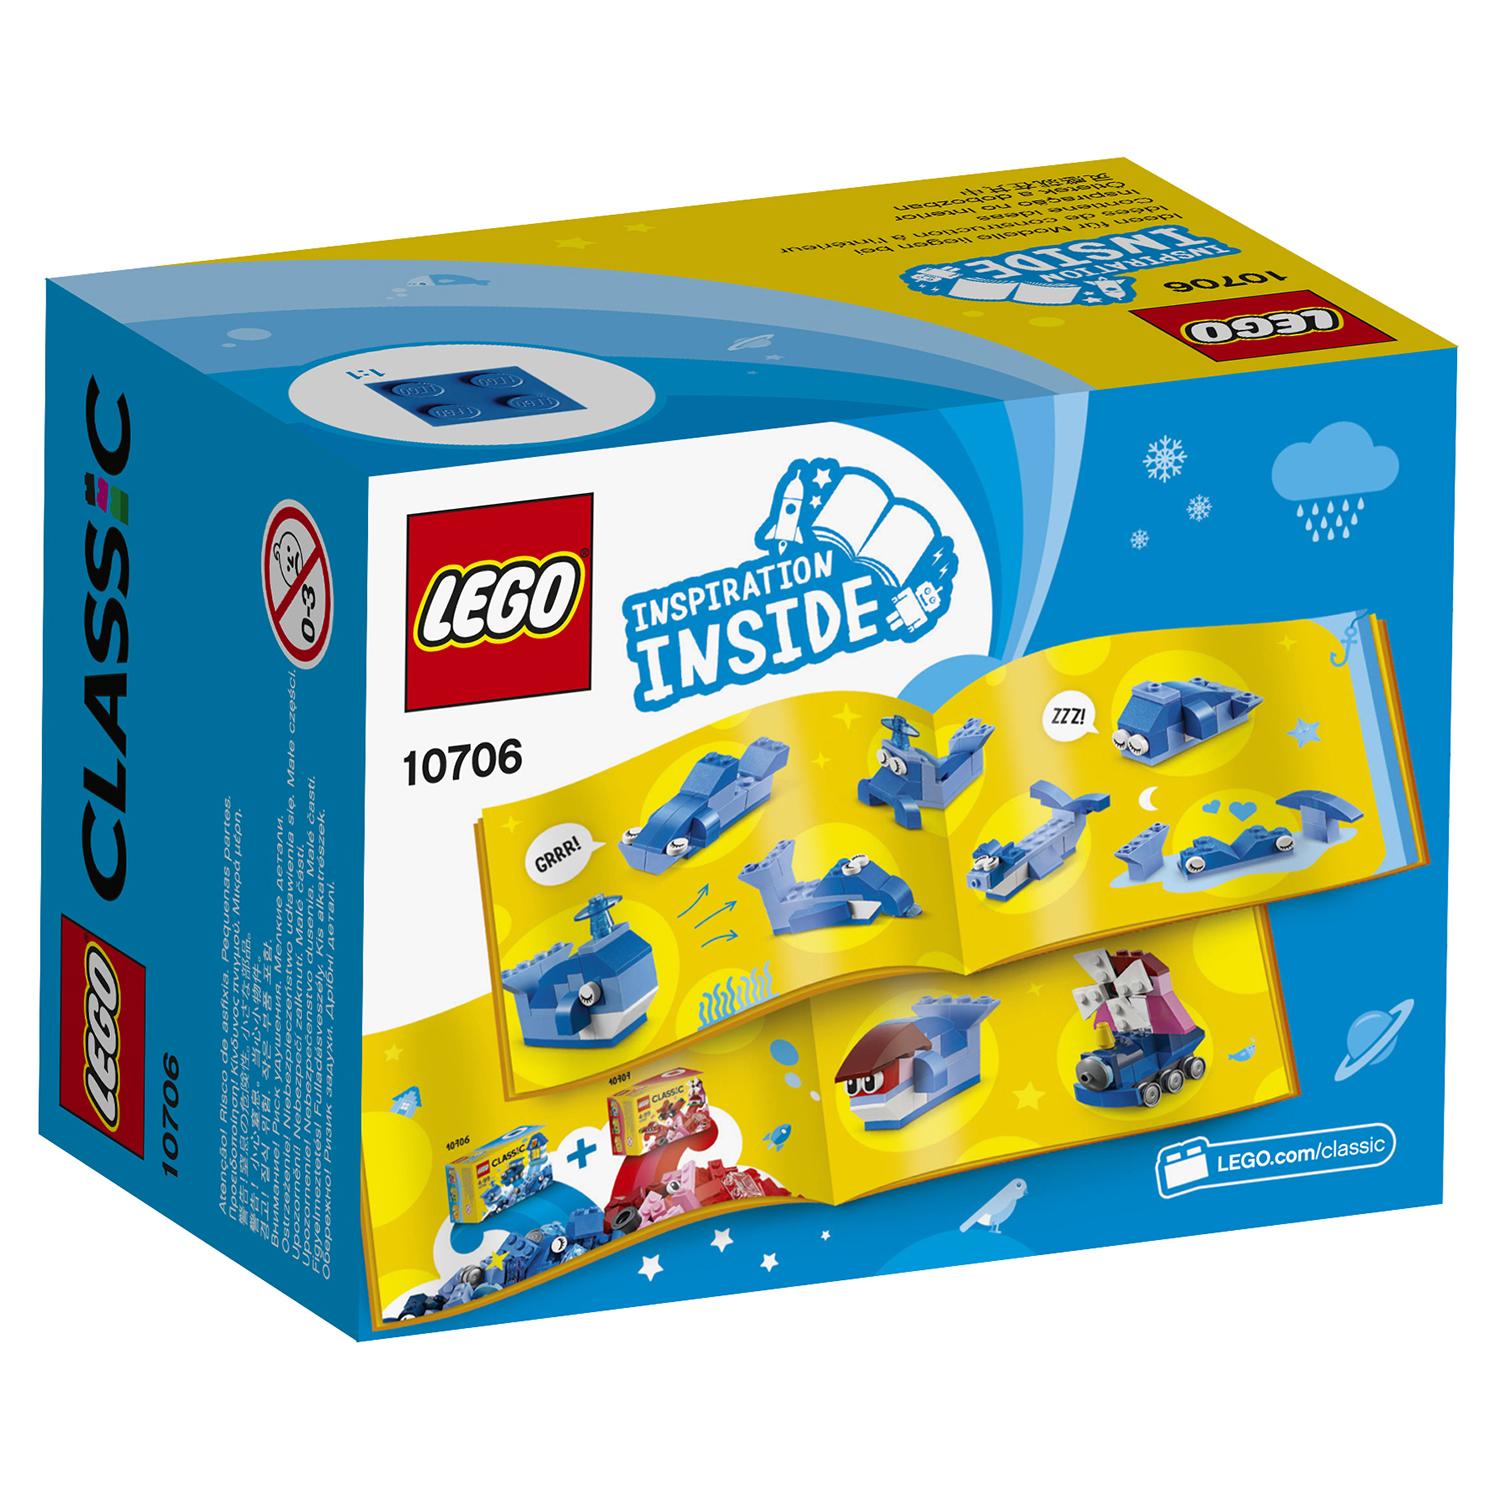 Lego Classic 10706 Синий набор для творчества